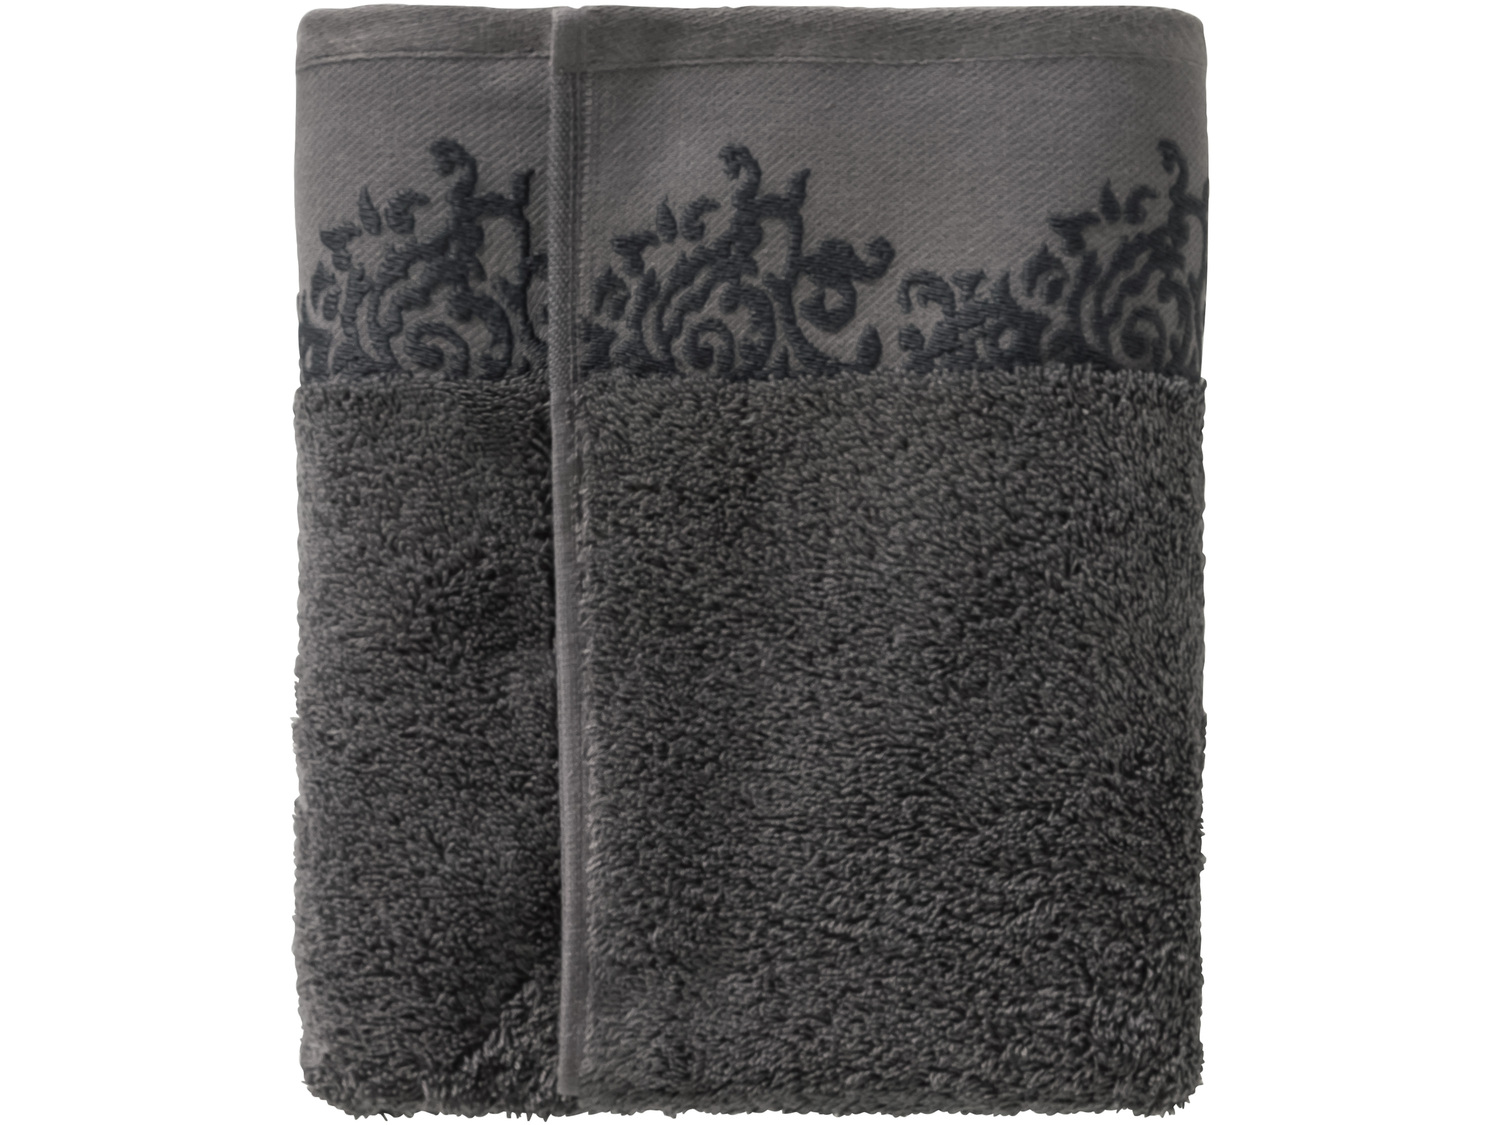 Ręcznik frotté 50 x 100 cm Miomare, cena 11,99 PLN 
- ozdobna bordiura
- 500 g/m2
- ...